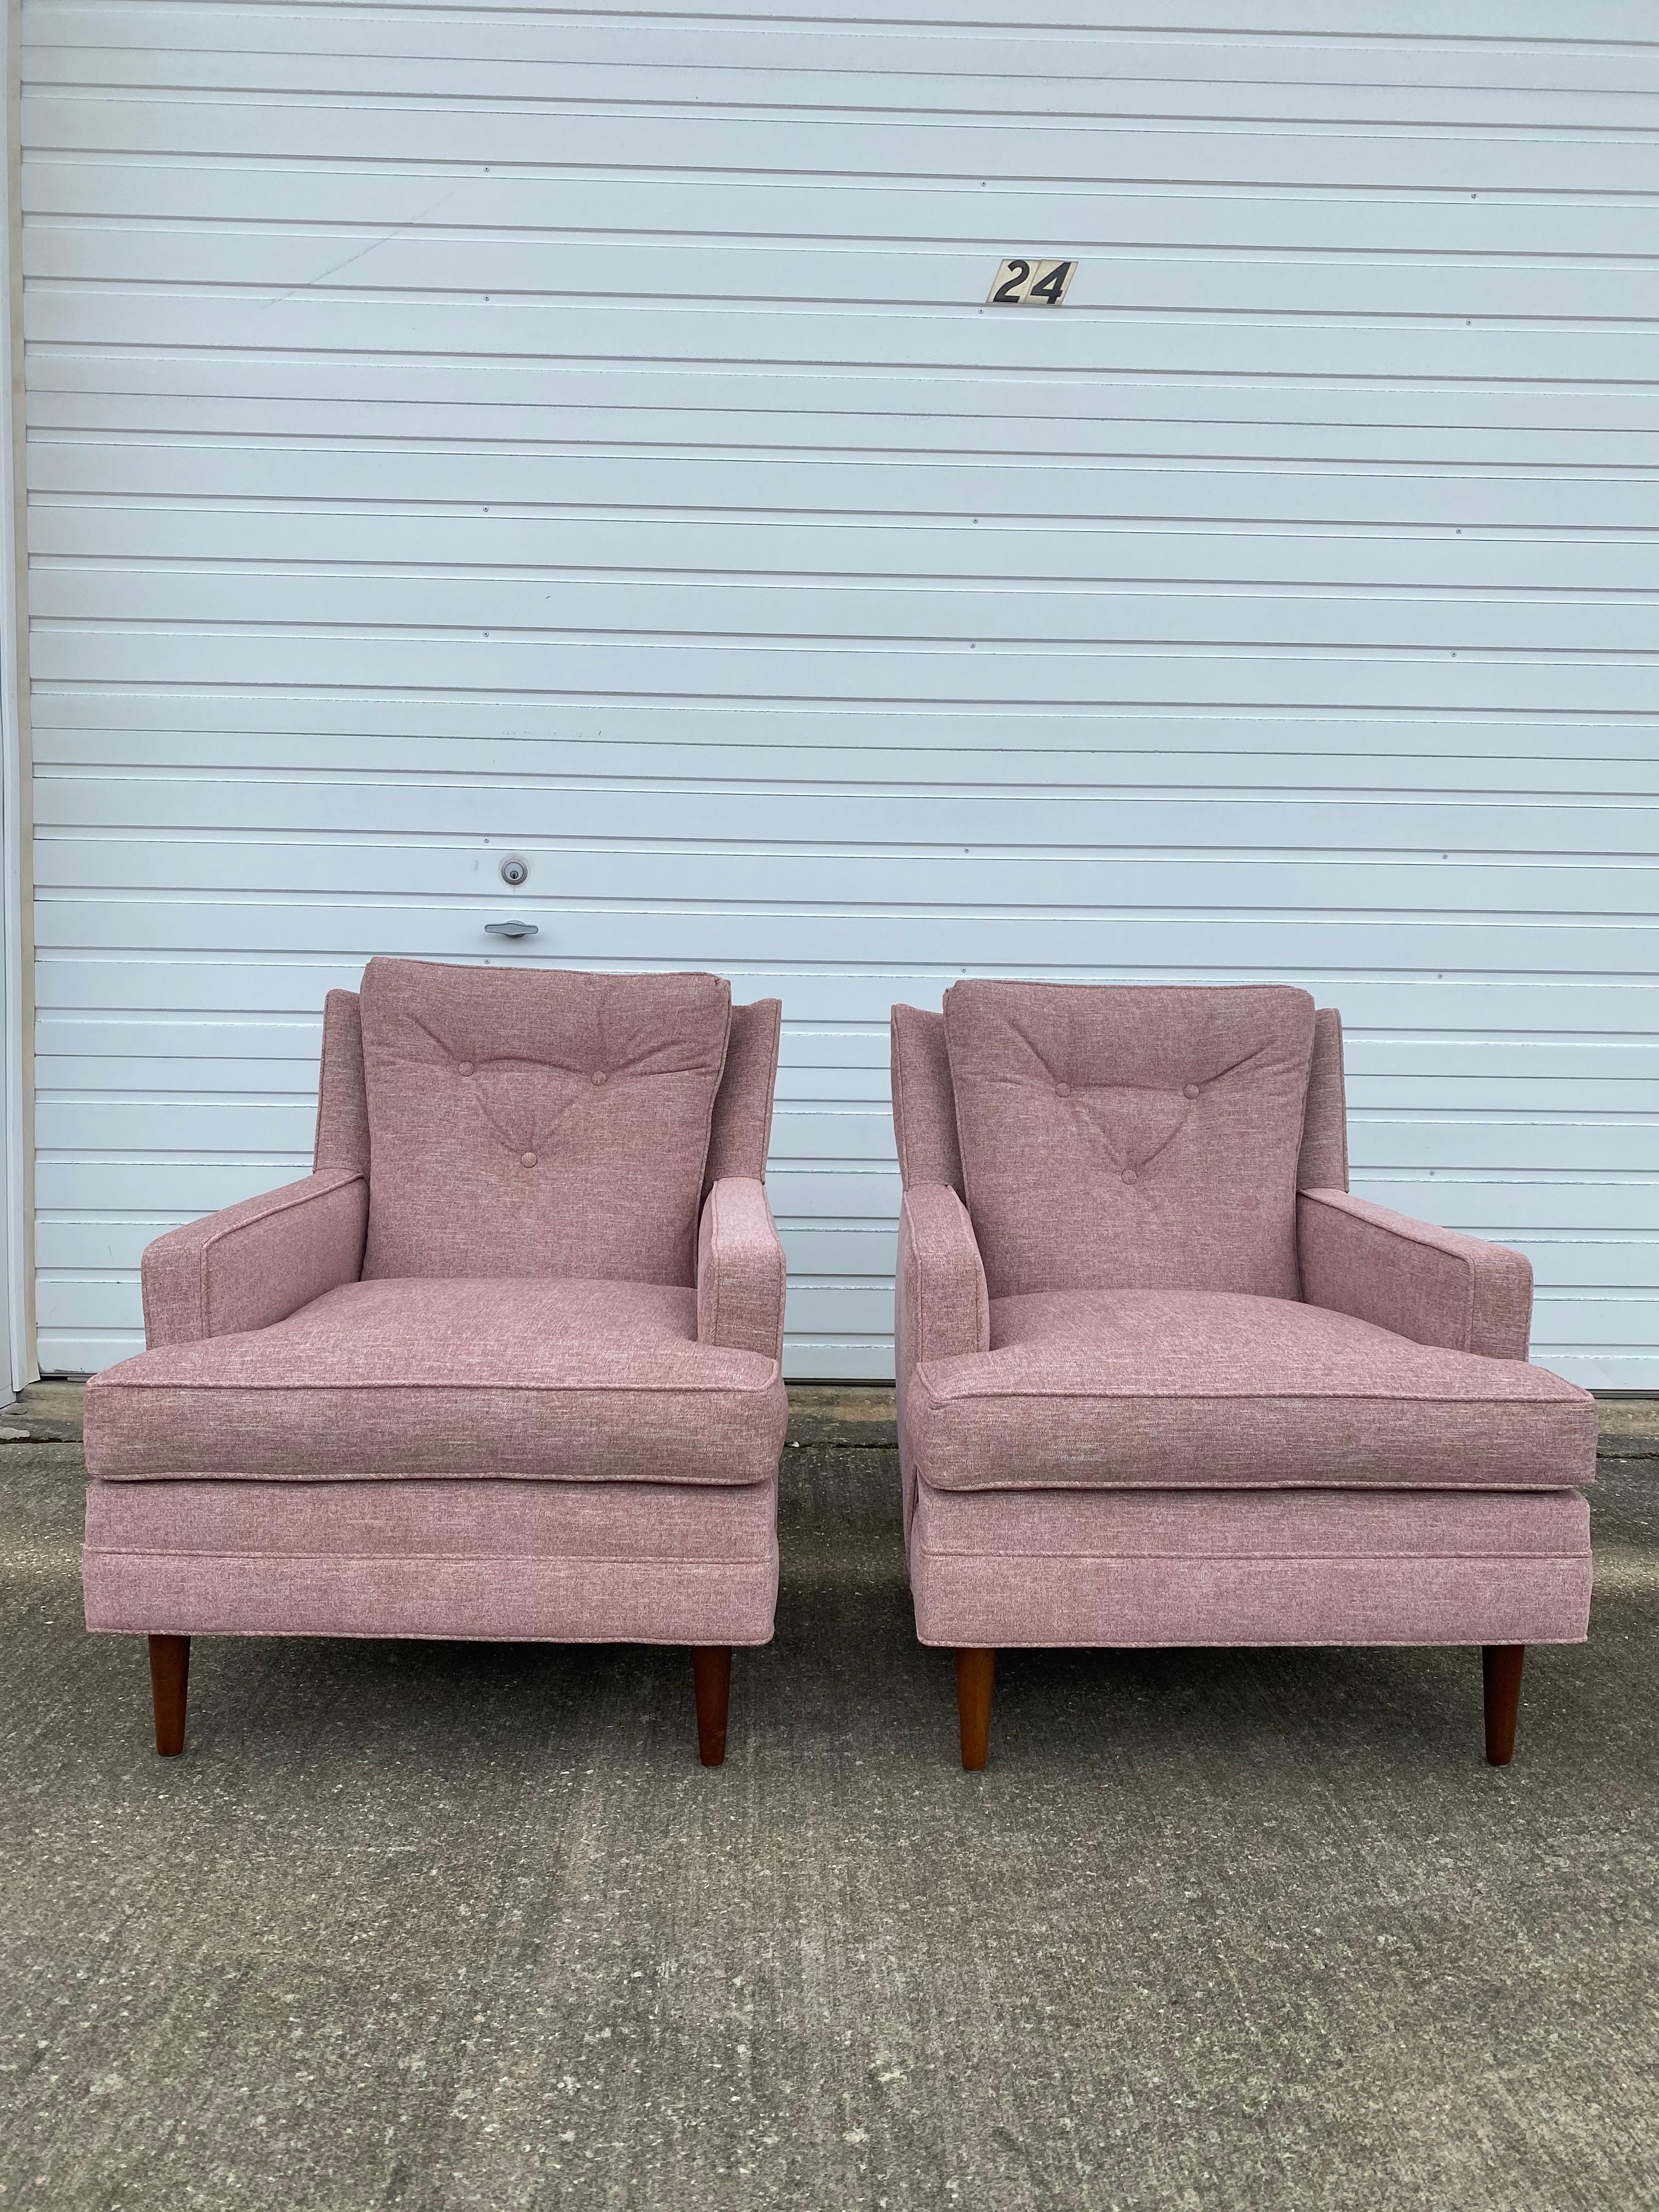 Paire de fauteuils Flair Club des années 1960, rembourrés, de Bernhardt. Ces chaises ont été entièrement retapissées dans un Crypton 49 Mauve de Great Lakes Fabrics, avec 50 000 doubles frottements. Il s'agit d'un tissu performant qui résiste aux